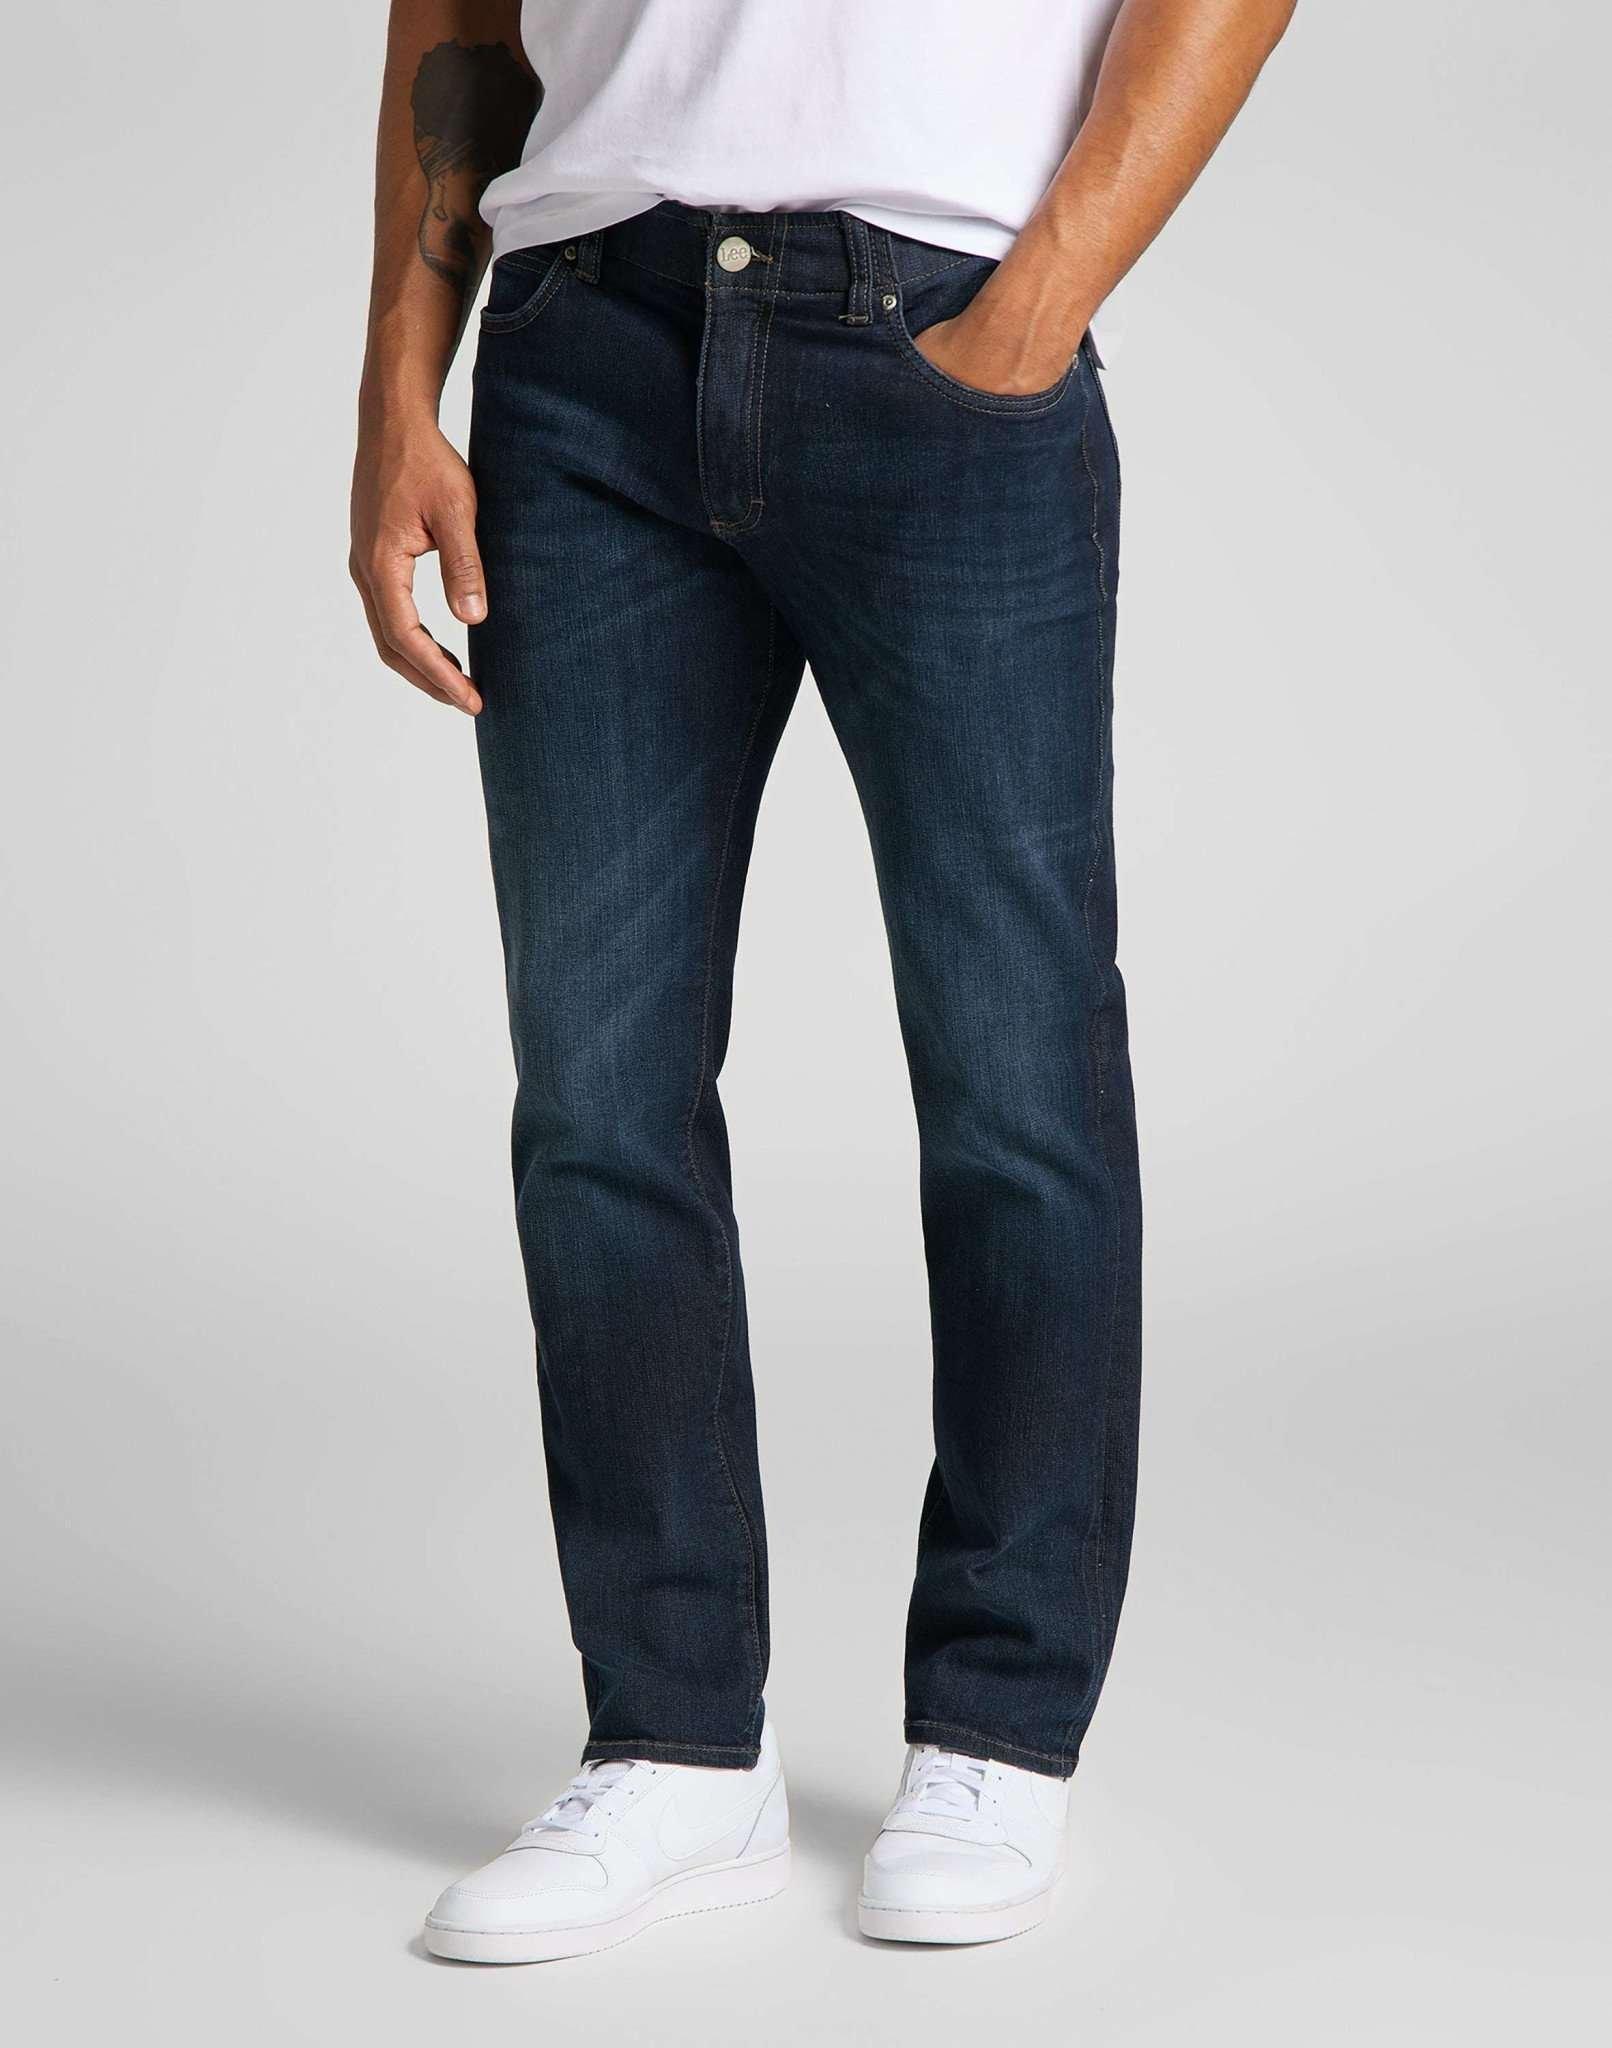 Jeans Straight Leg Xm Herren Blau Denim L34/W40 von Lee